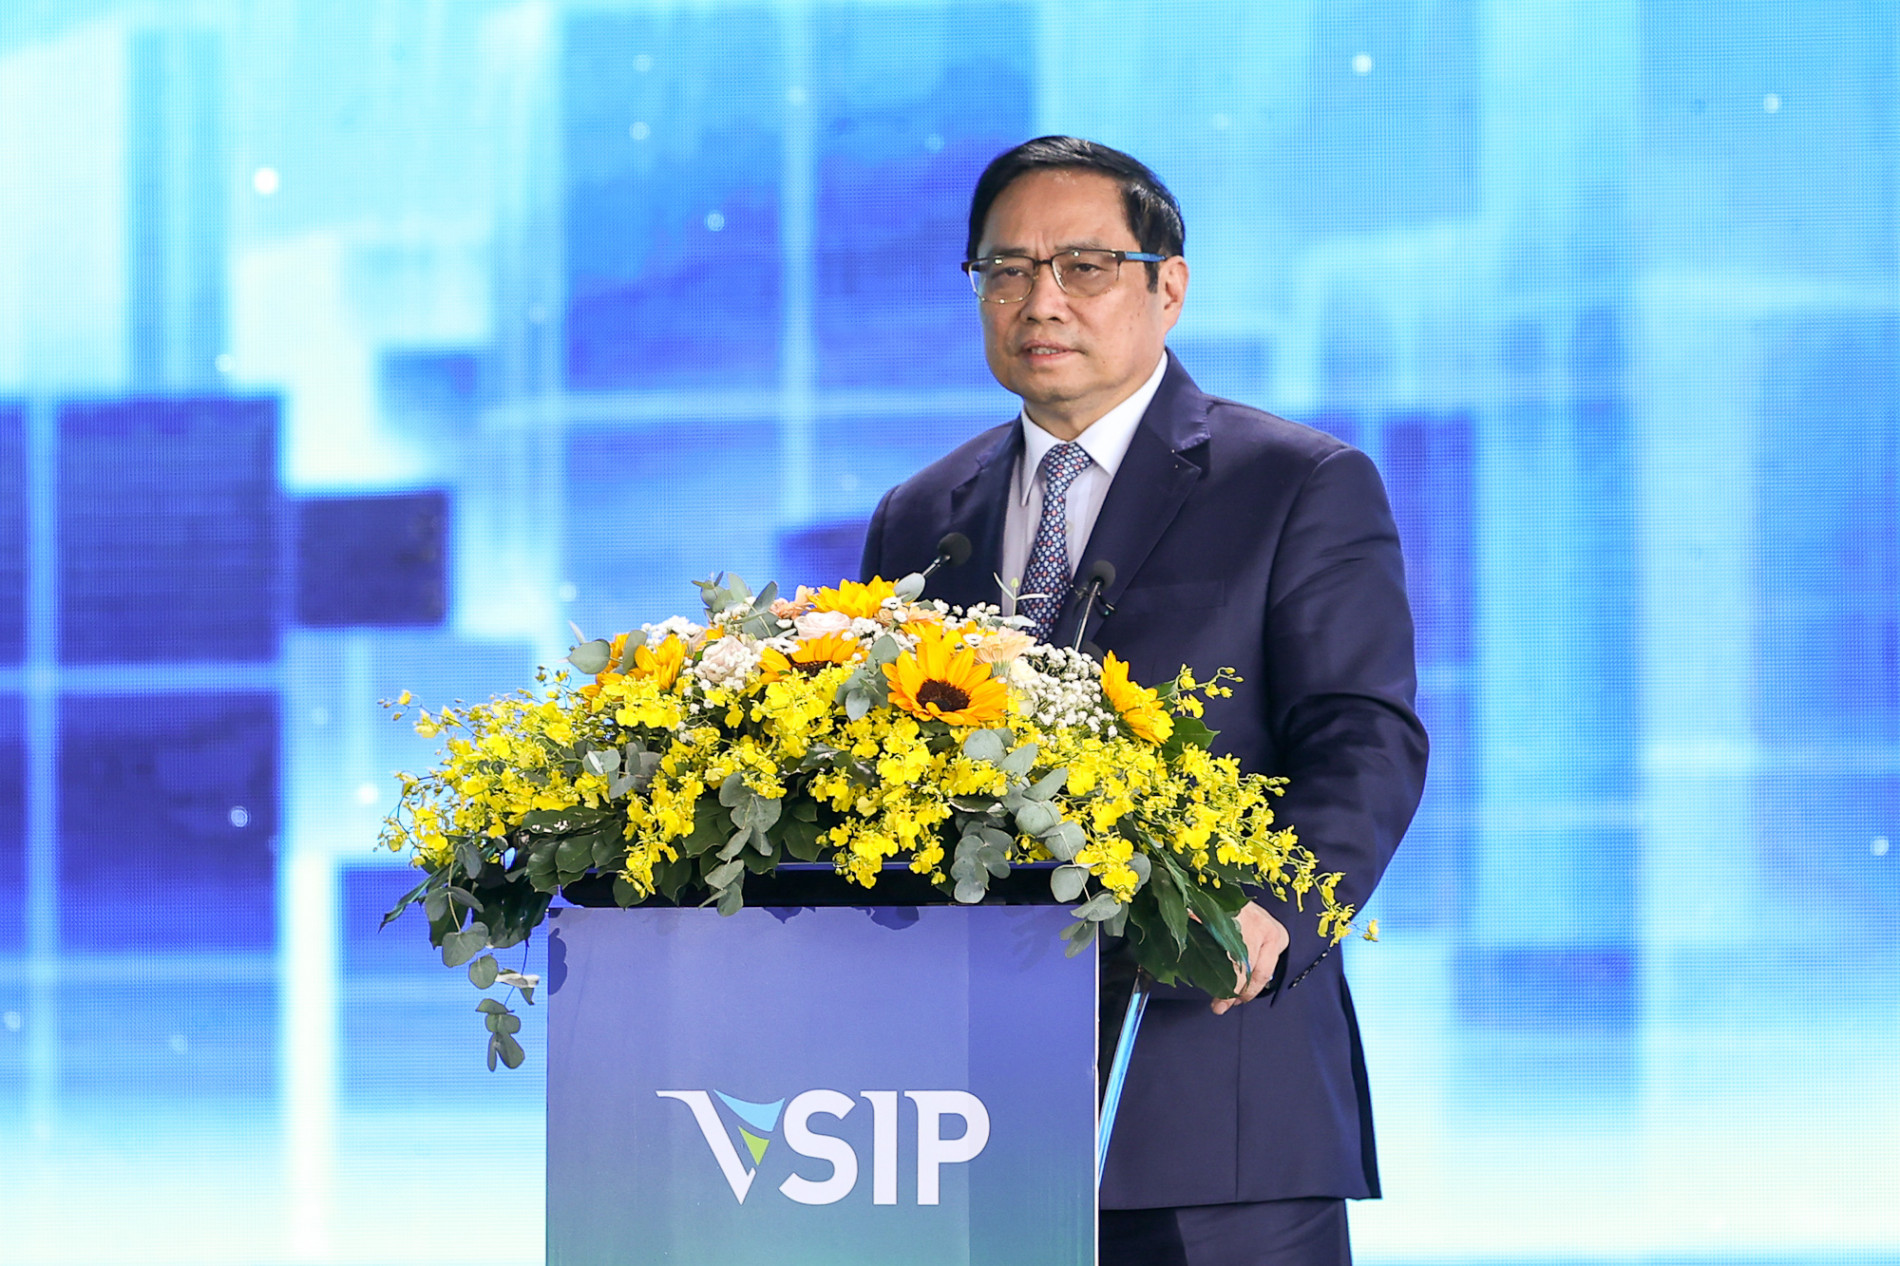 Chùm ảnh: Thủ tướng dự lễ khởi công KCN Việt Nam-Singapore - Ảnh 6.